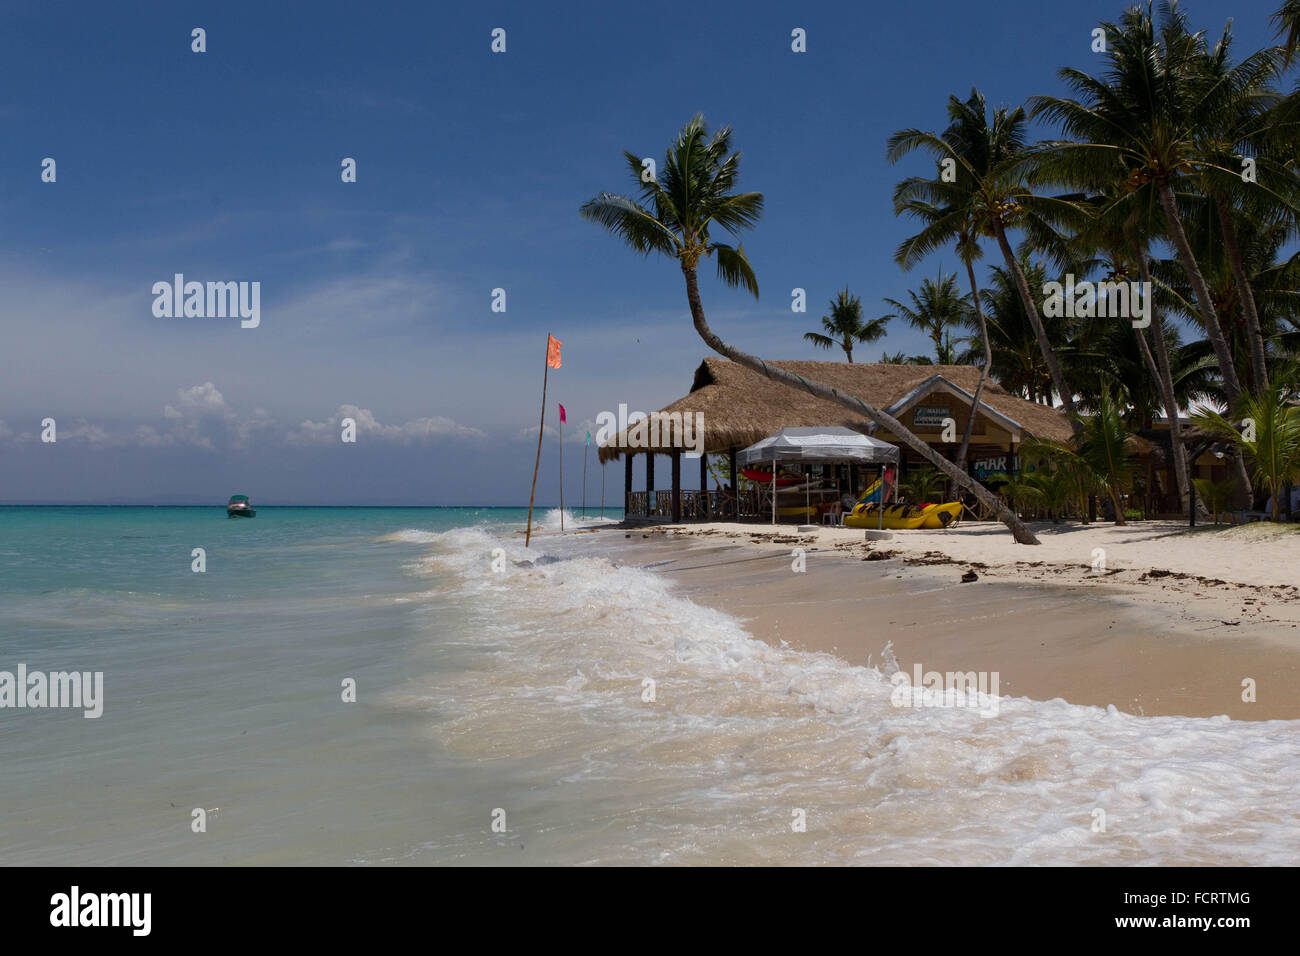 Santa Fe Bantayan Island,plage,situé à l'extrémité nord de Cebu, Philippines Banque D'Images